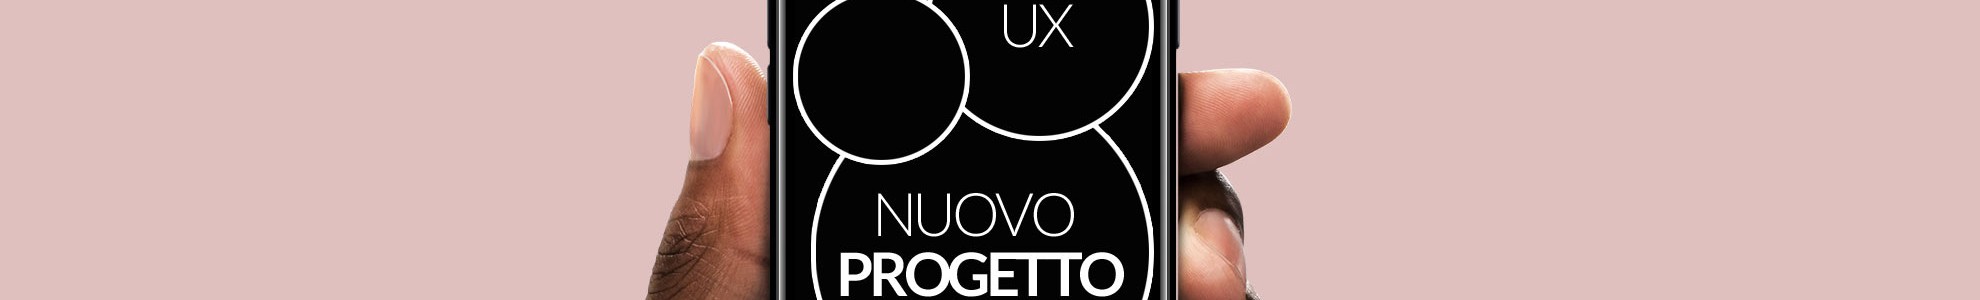 Nuovo progetto: metodo user experience designer